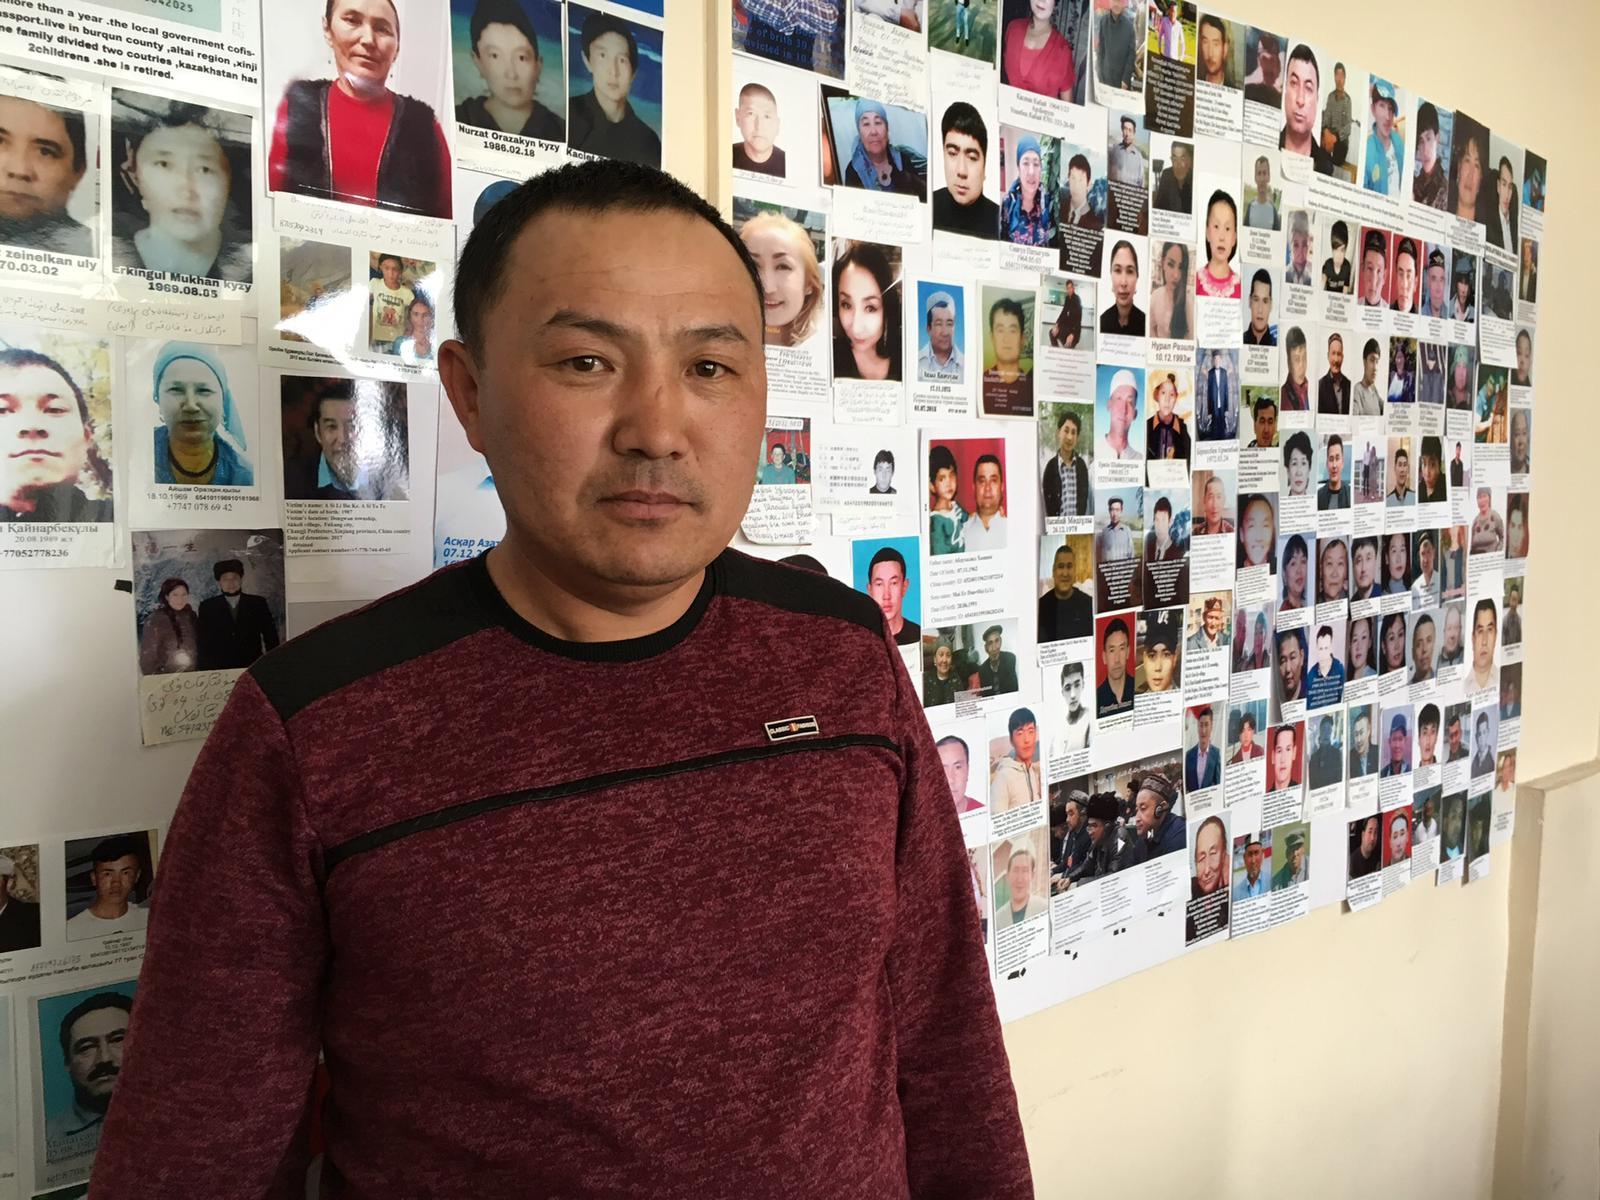 Orinbek Koksebek, un Chinois de l'ethnie kazakh, a été détenu au Xinjiang pendant 125 jours. [RTS - Michael Peuker]